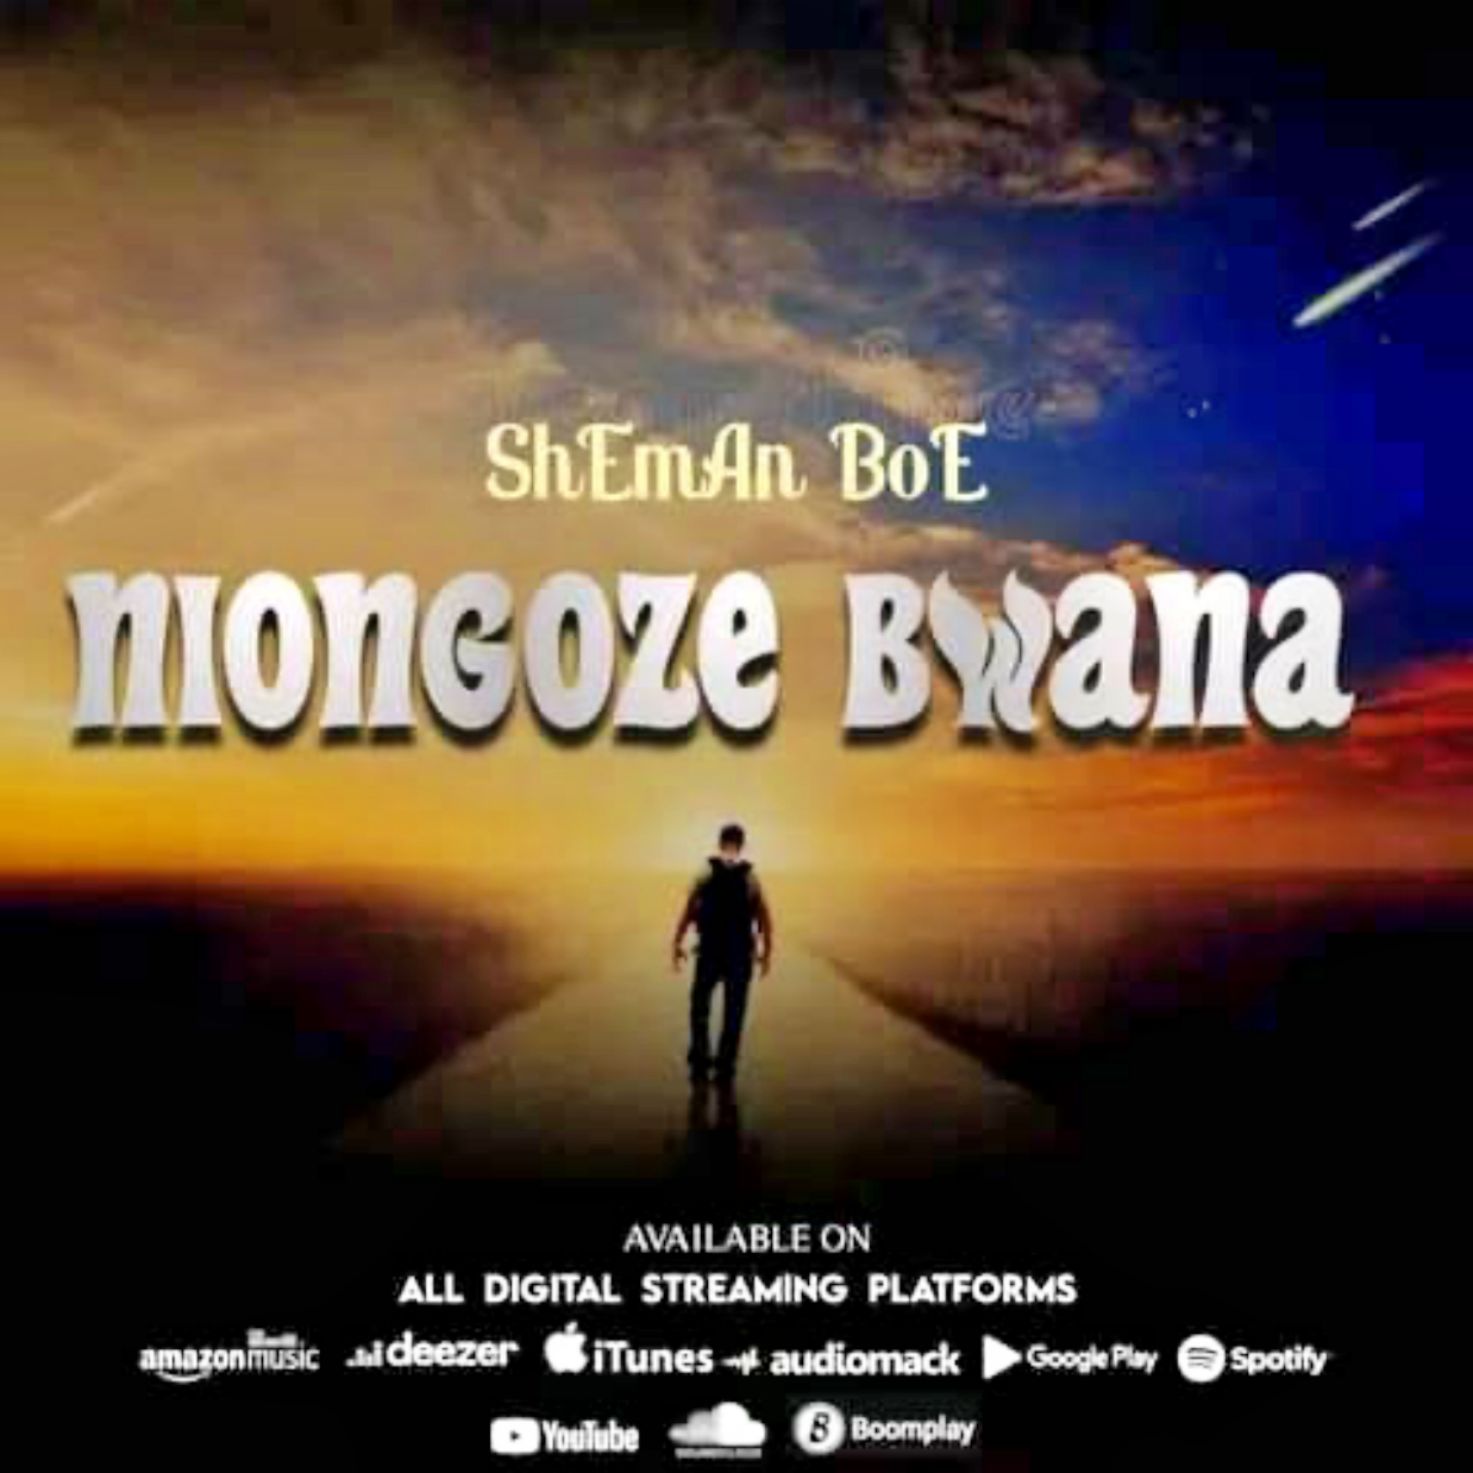  ShEmAn BoE – Niongoze Bwana